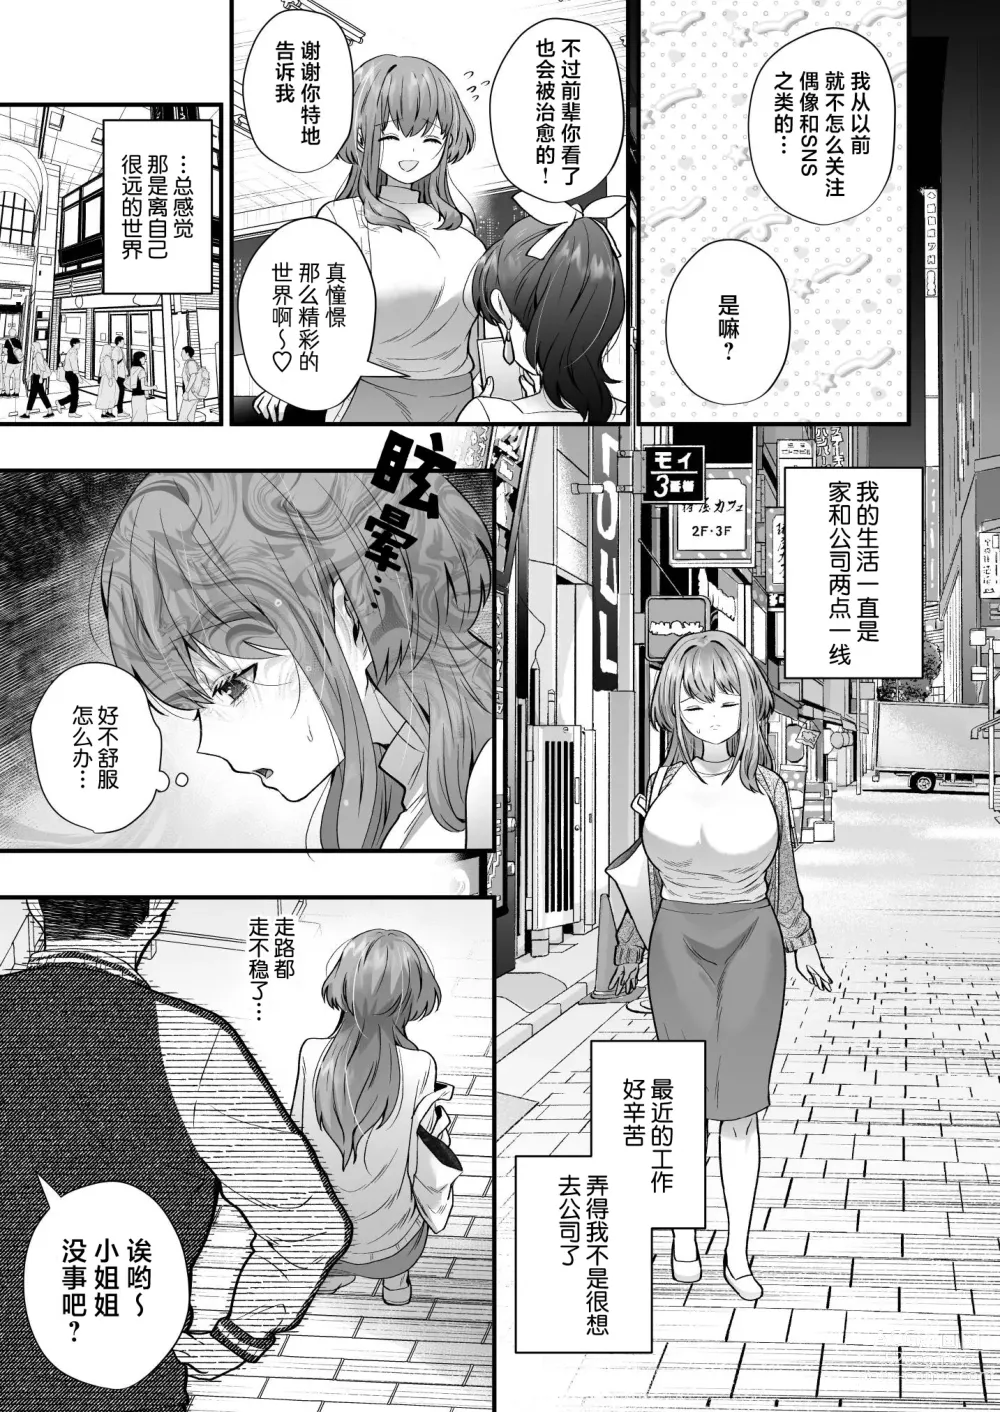 Page 5 of doujinshi 社畜OL与淫魔兄弟间的甜蜜蜜监禁 惩戒般的SEX